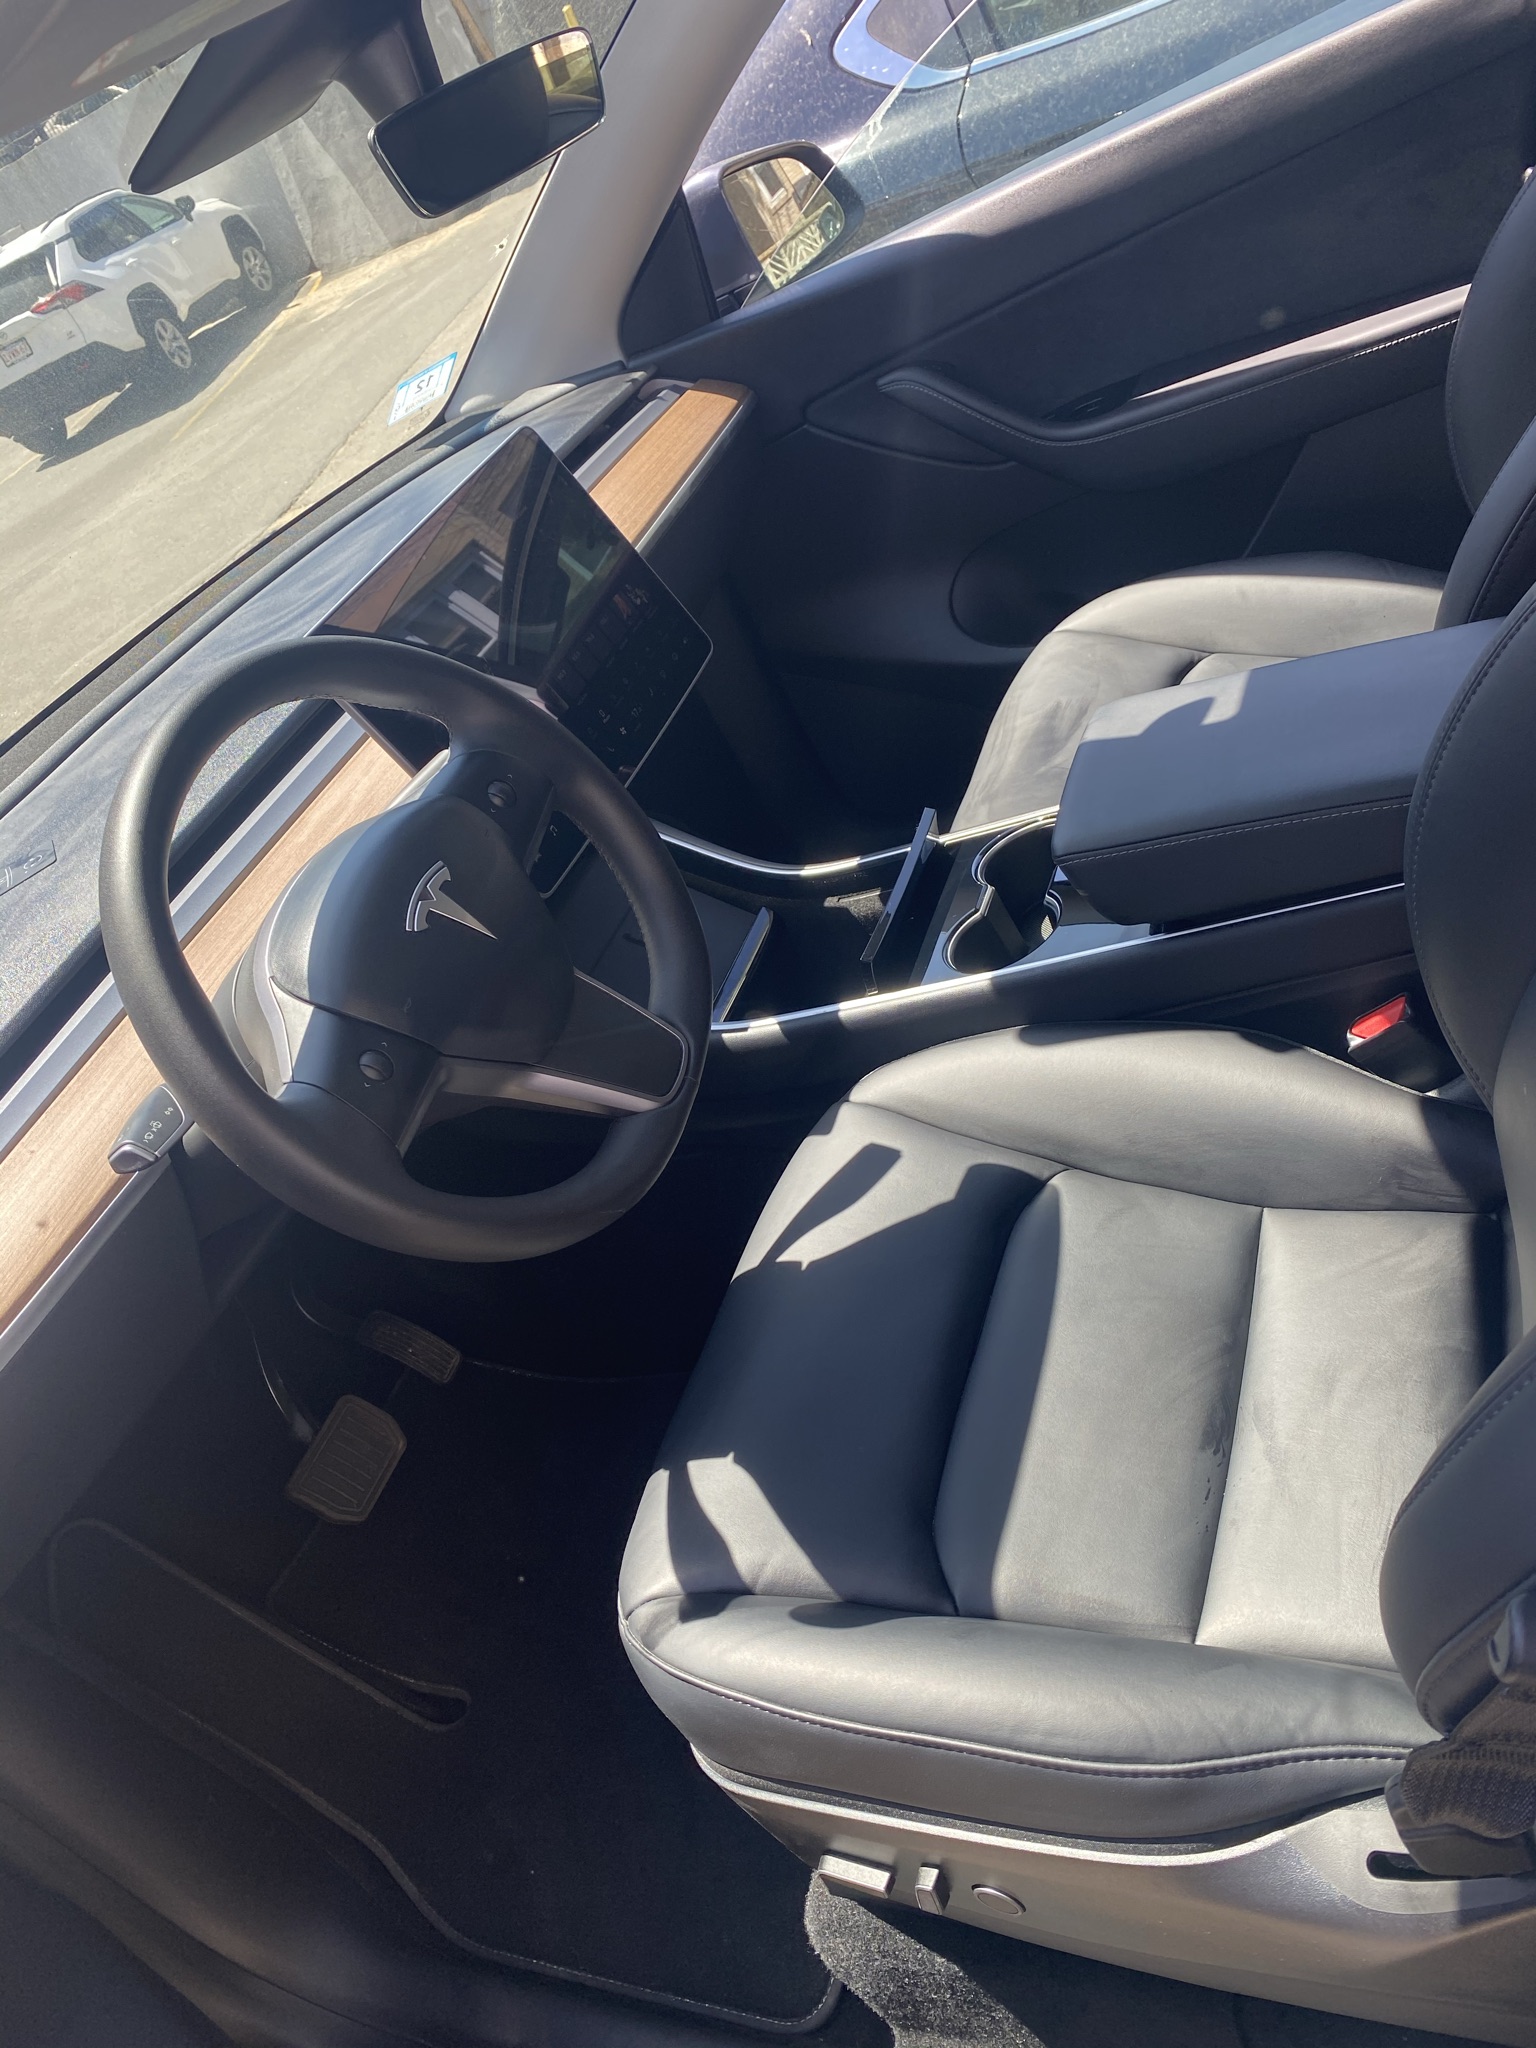 Tesla model 3 interior after detail font row